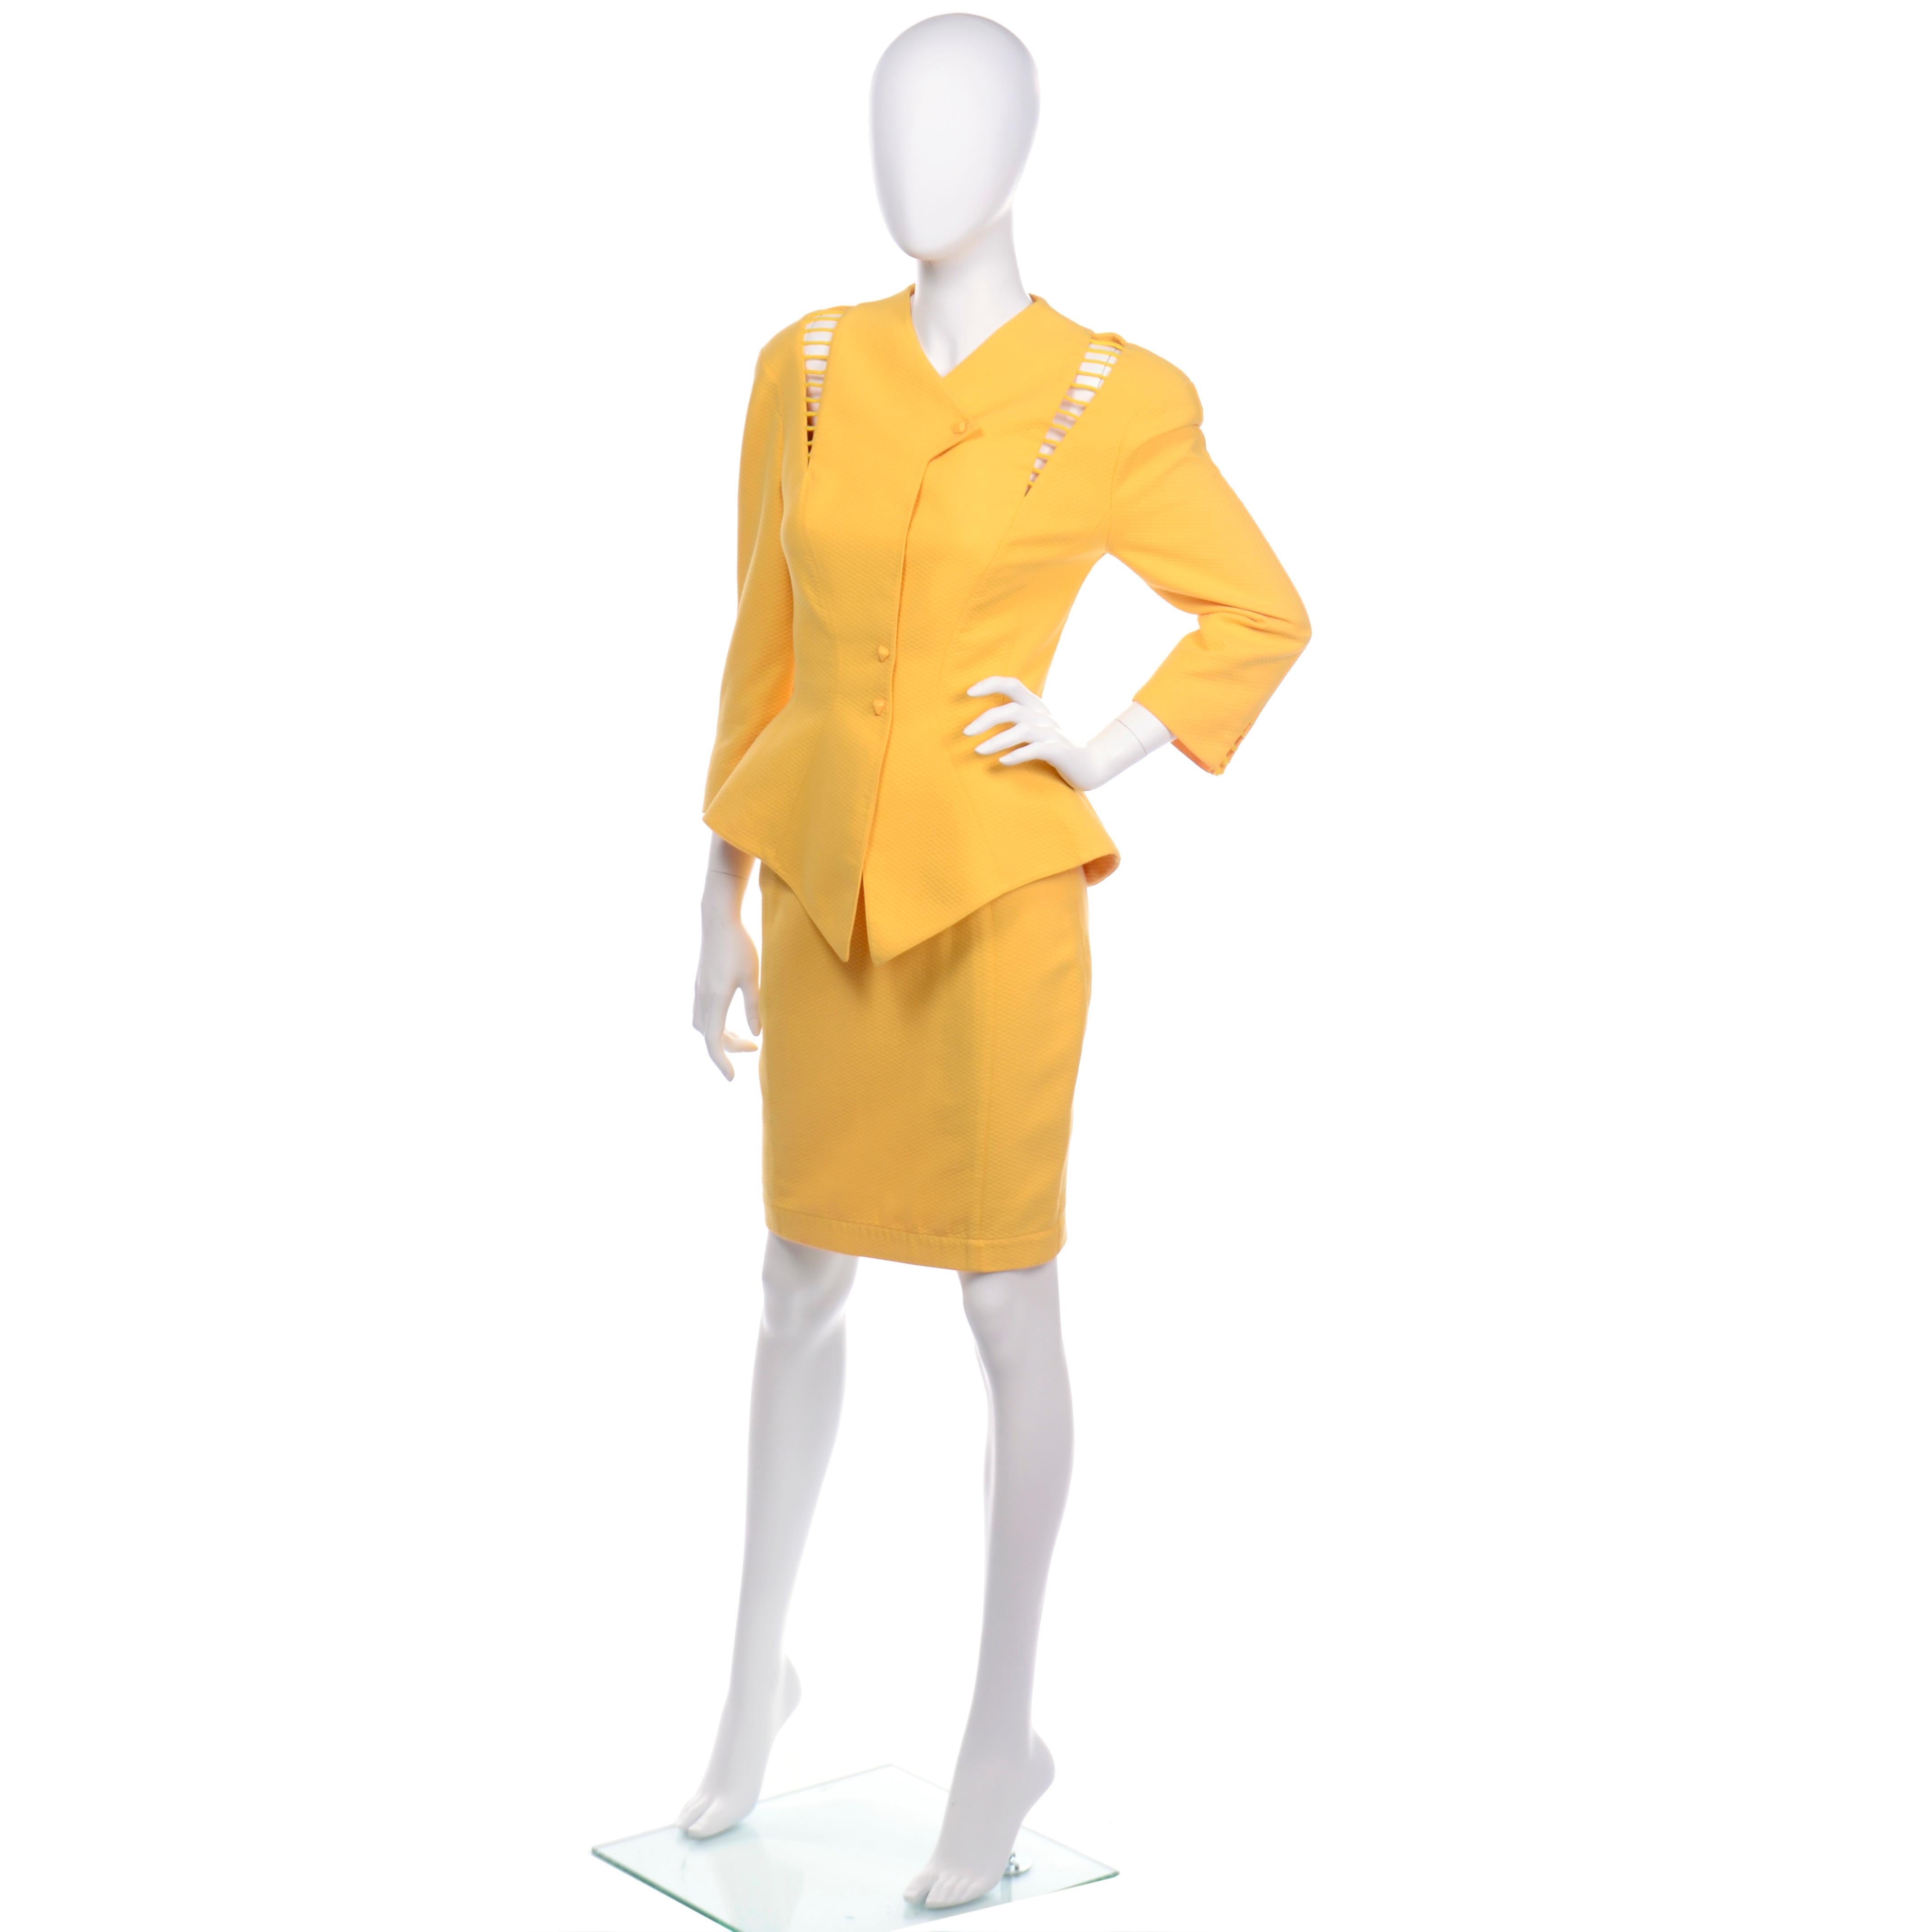 Il s'agit d'un tailleur jupe emblématique de Thierry Mugler, en piqué marigold ou jaune marigold . La veste est ajustée dans le style péplum spectaculaire de Mugler et présente d'incroyables découpes près des épaules sur les deux côtés et sur les